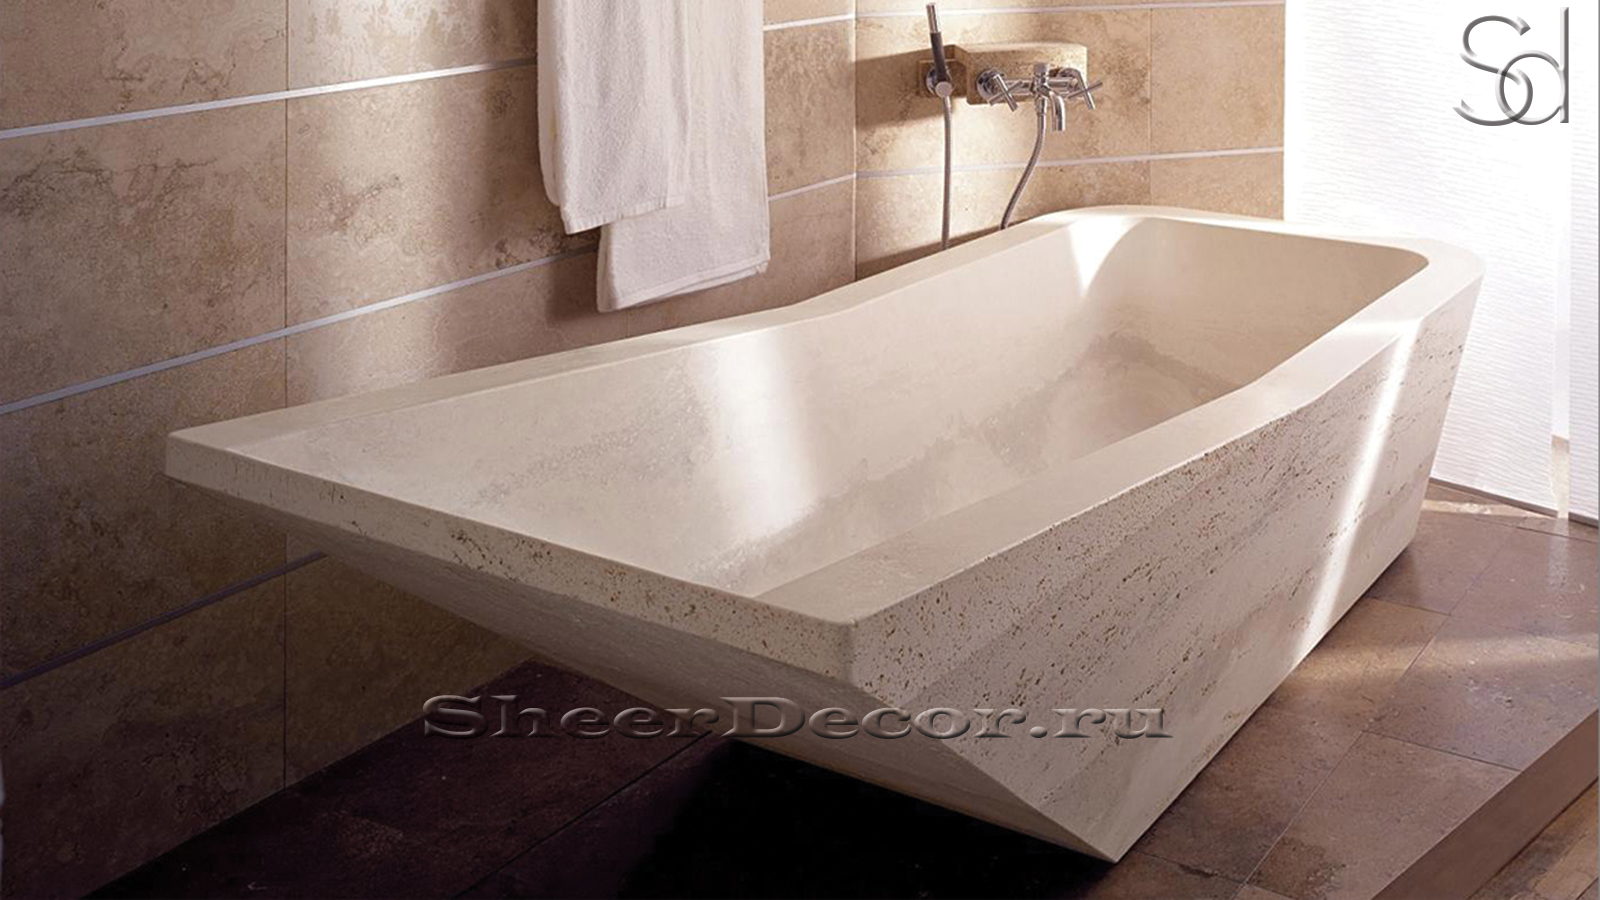 Элитная ванна Ivona M5 бежевого цвета из травертина Classico Romano 018004455_2